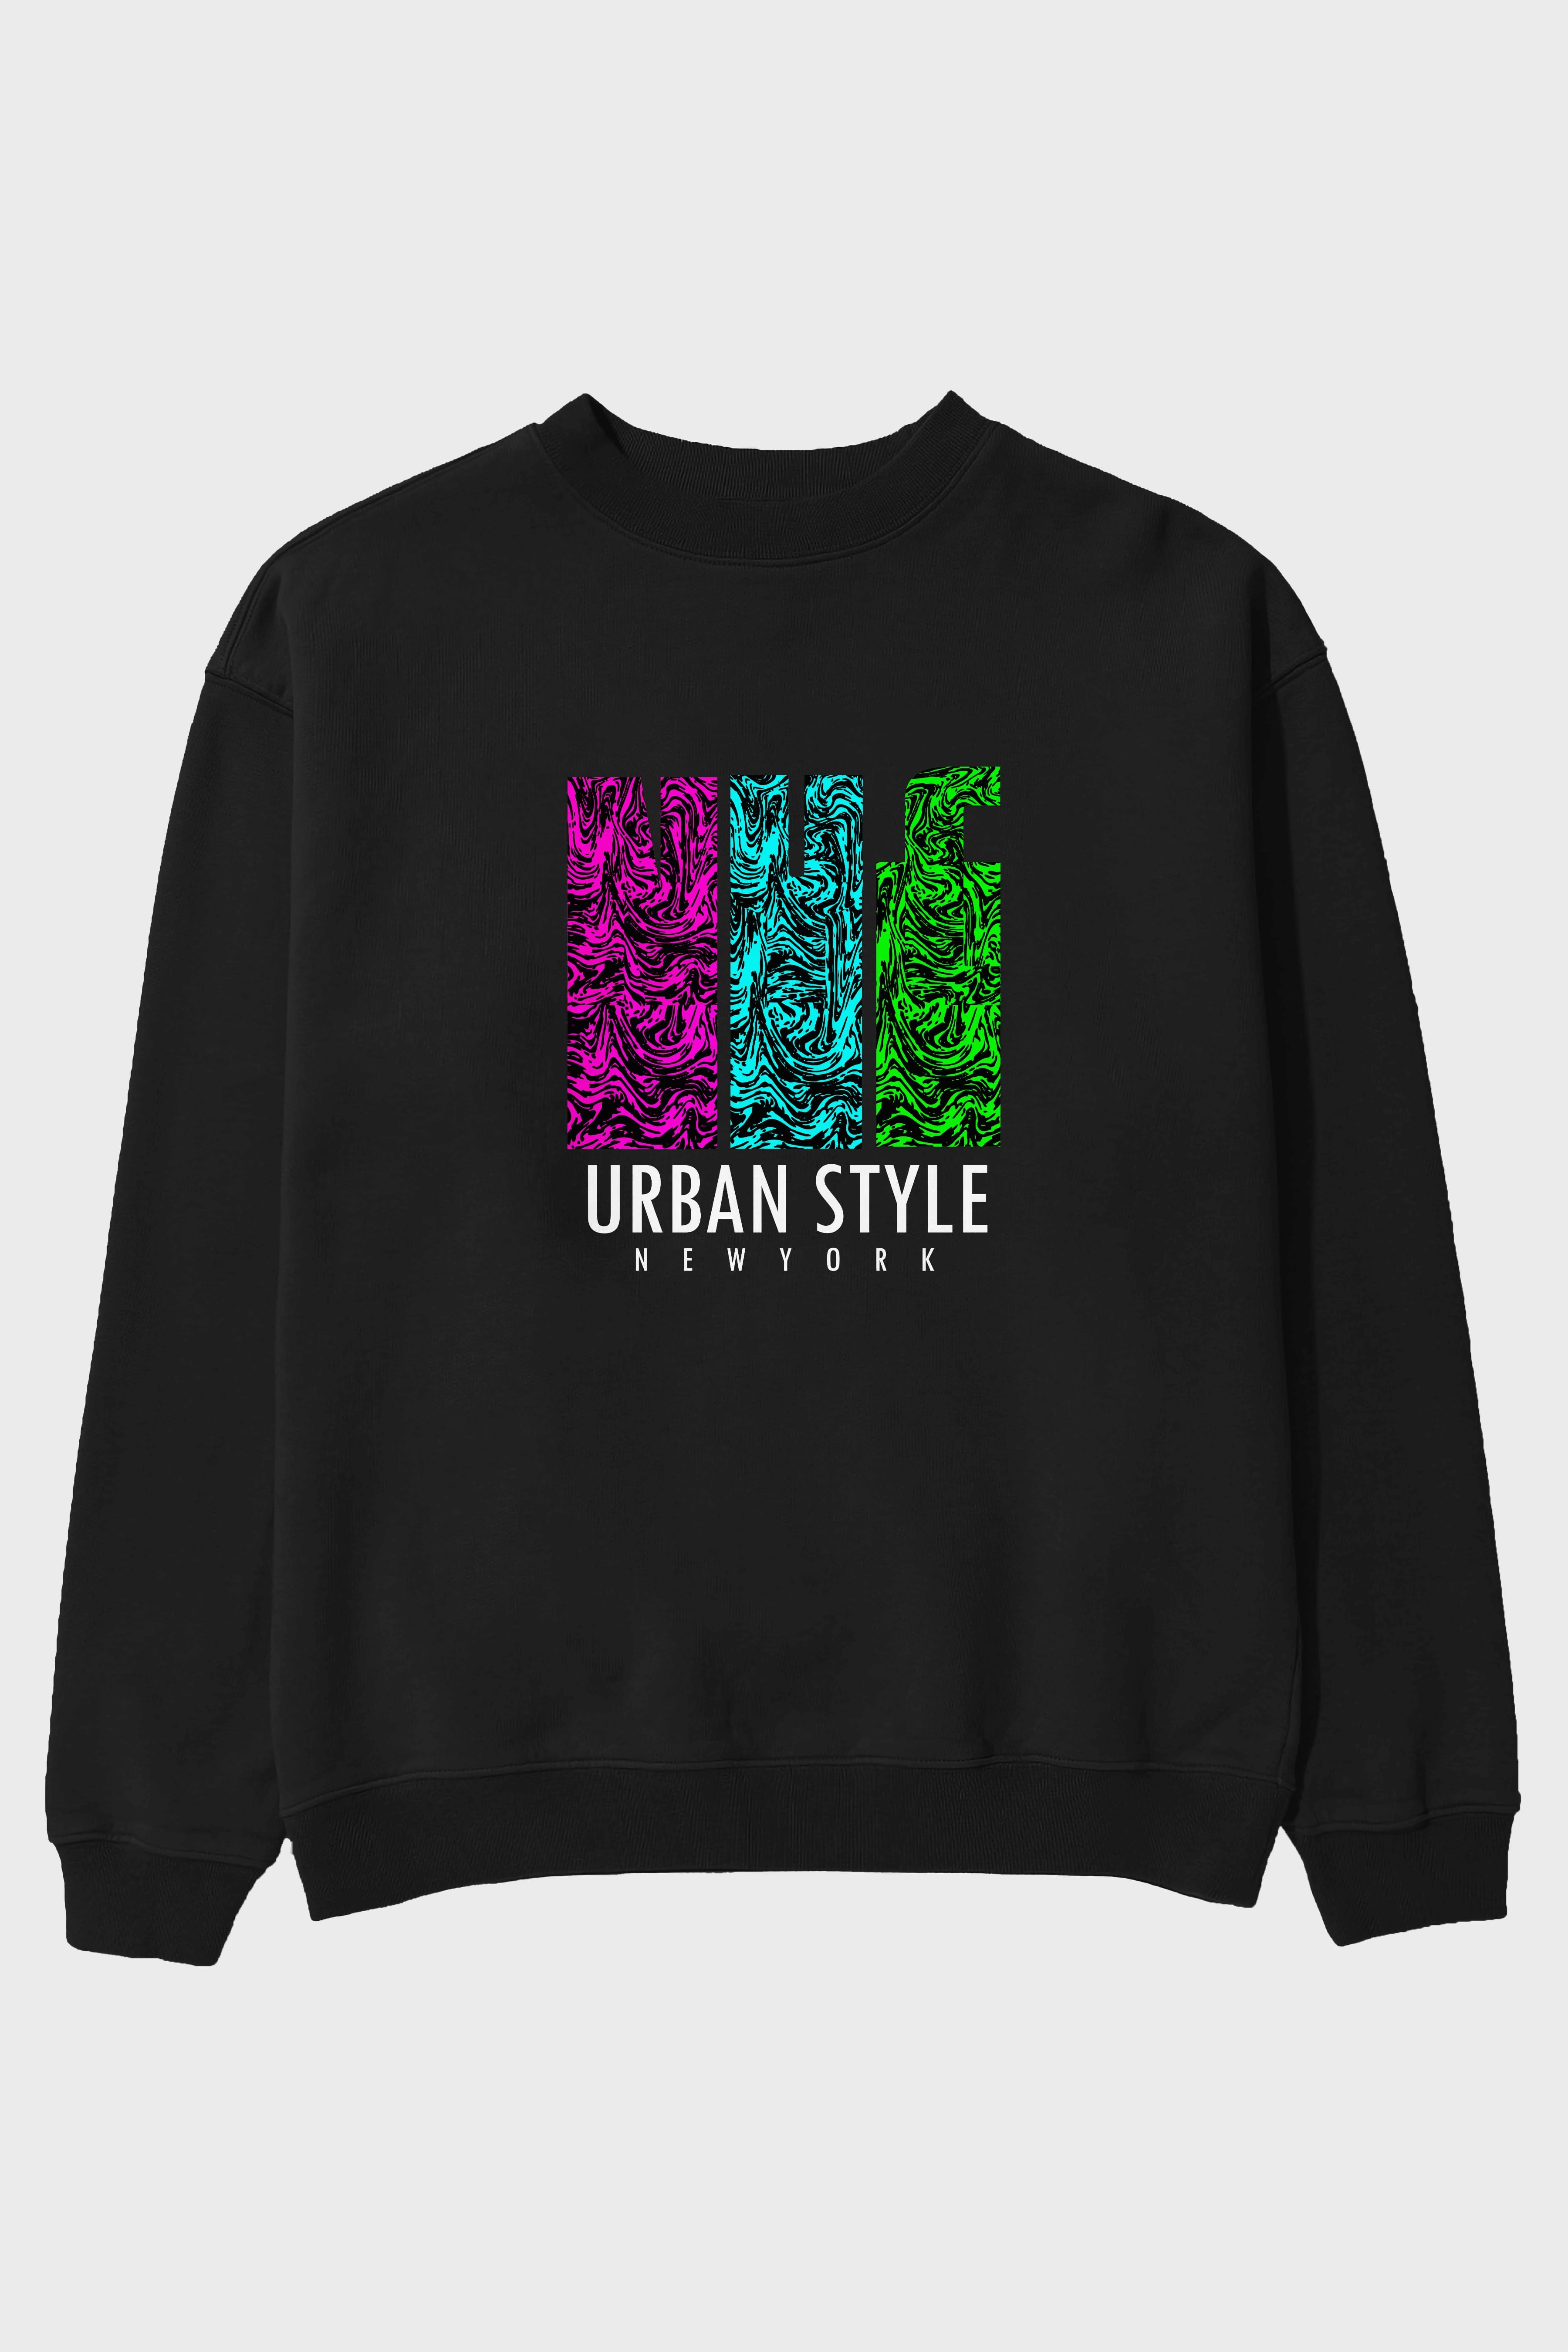 Urban Style Newyork Ön Baskılı Oversize Sweatshirt Erkek Kadın Unisex